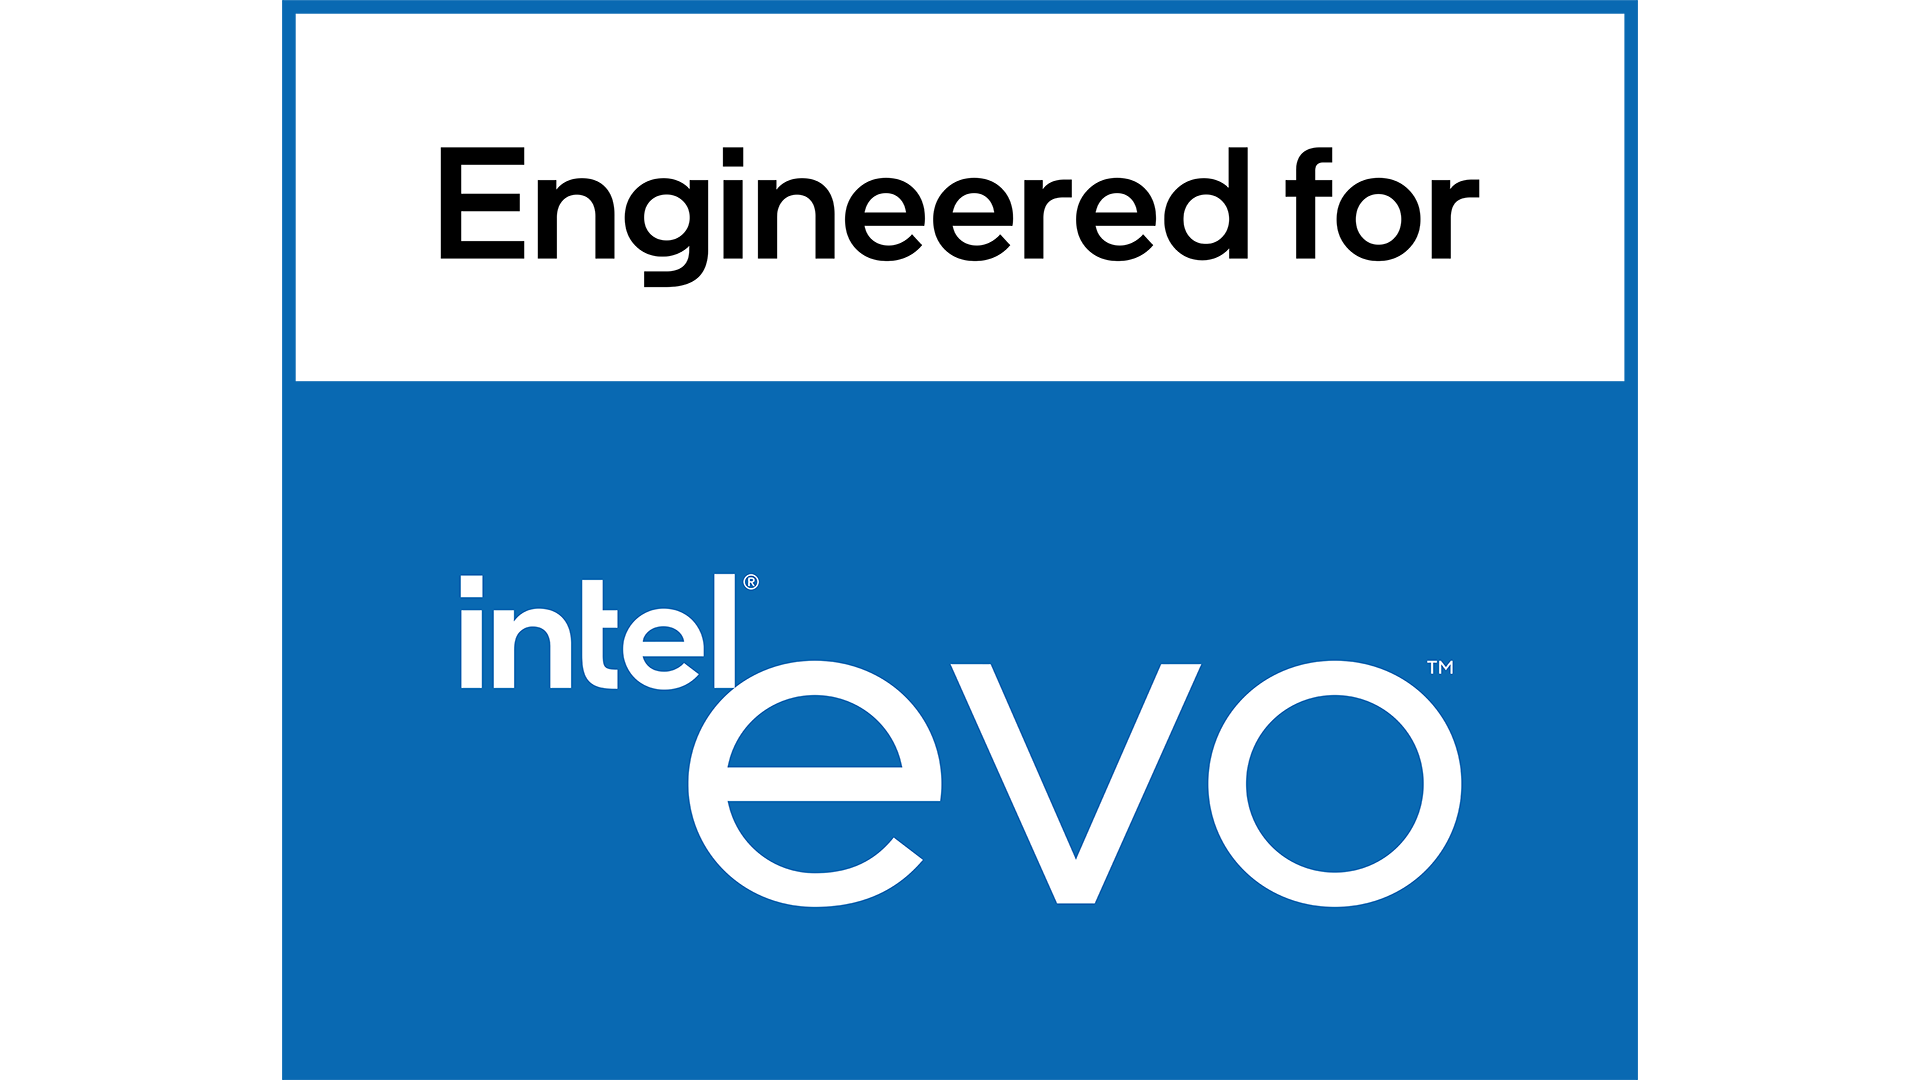 Intel khẳng định vị thế dẫn đầu trong lĩnh vực thiết bị vi xử lý di động